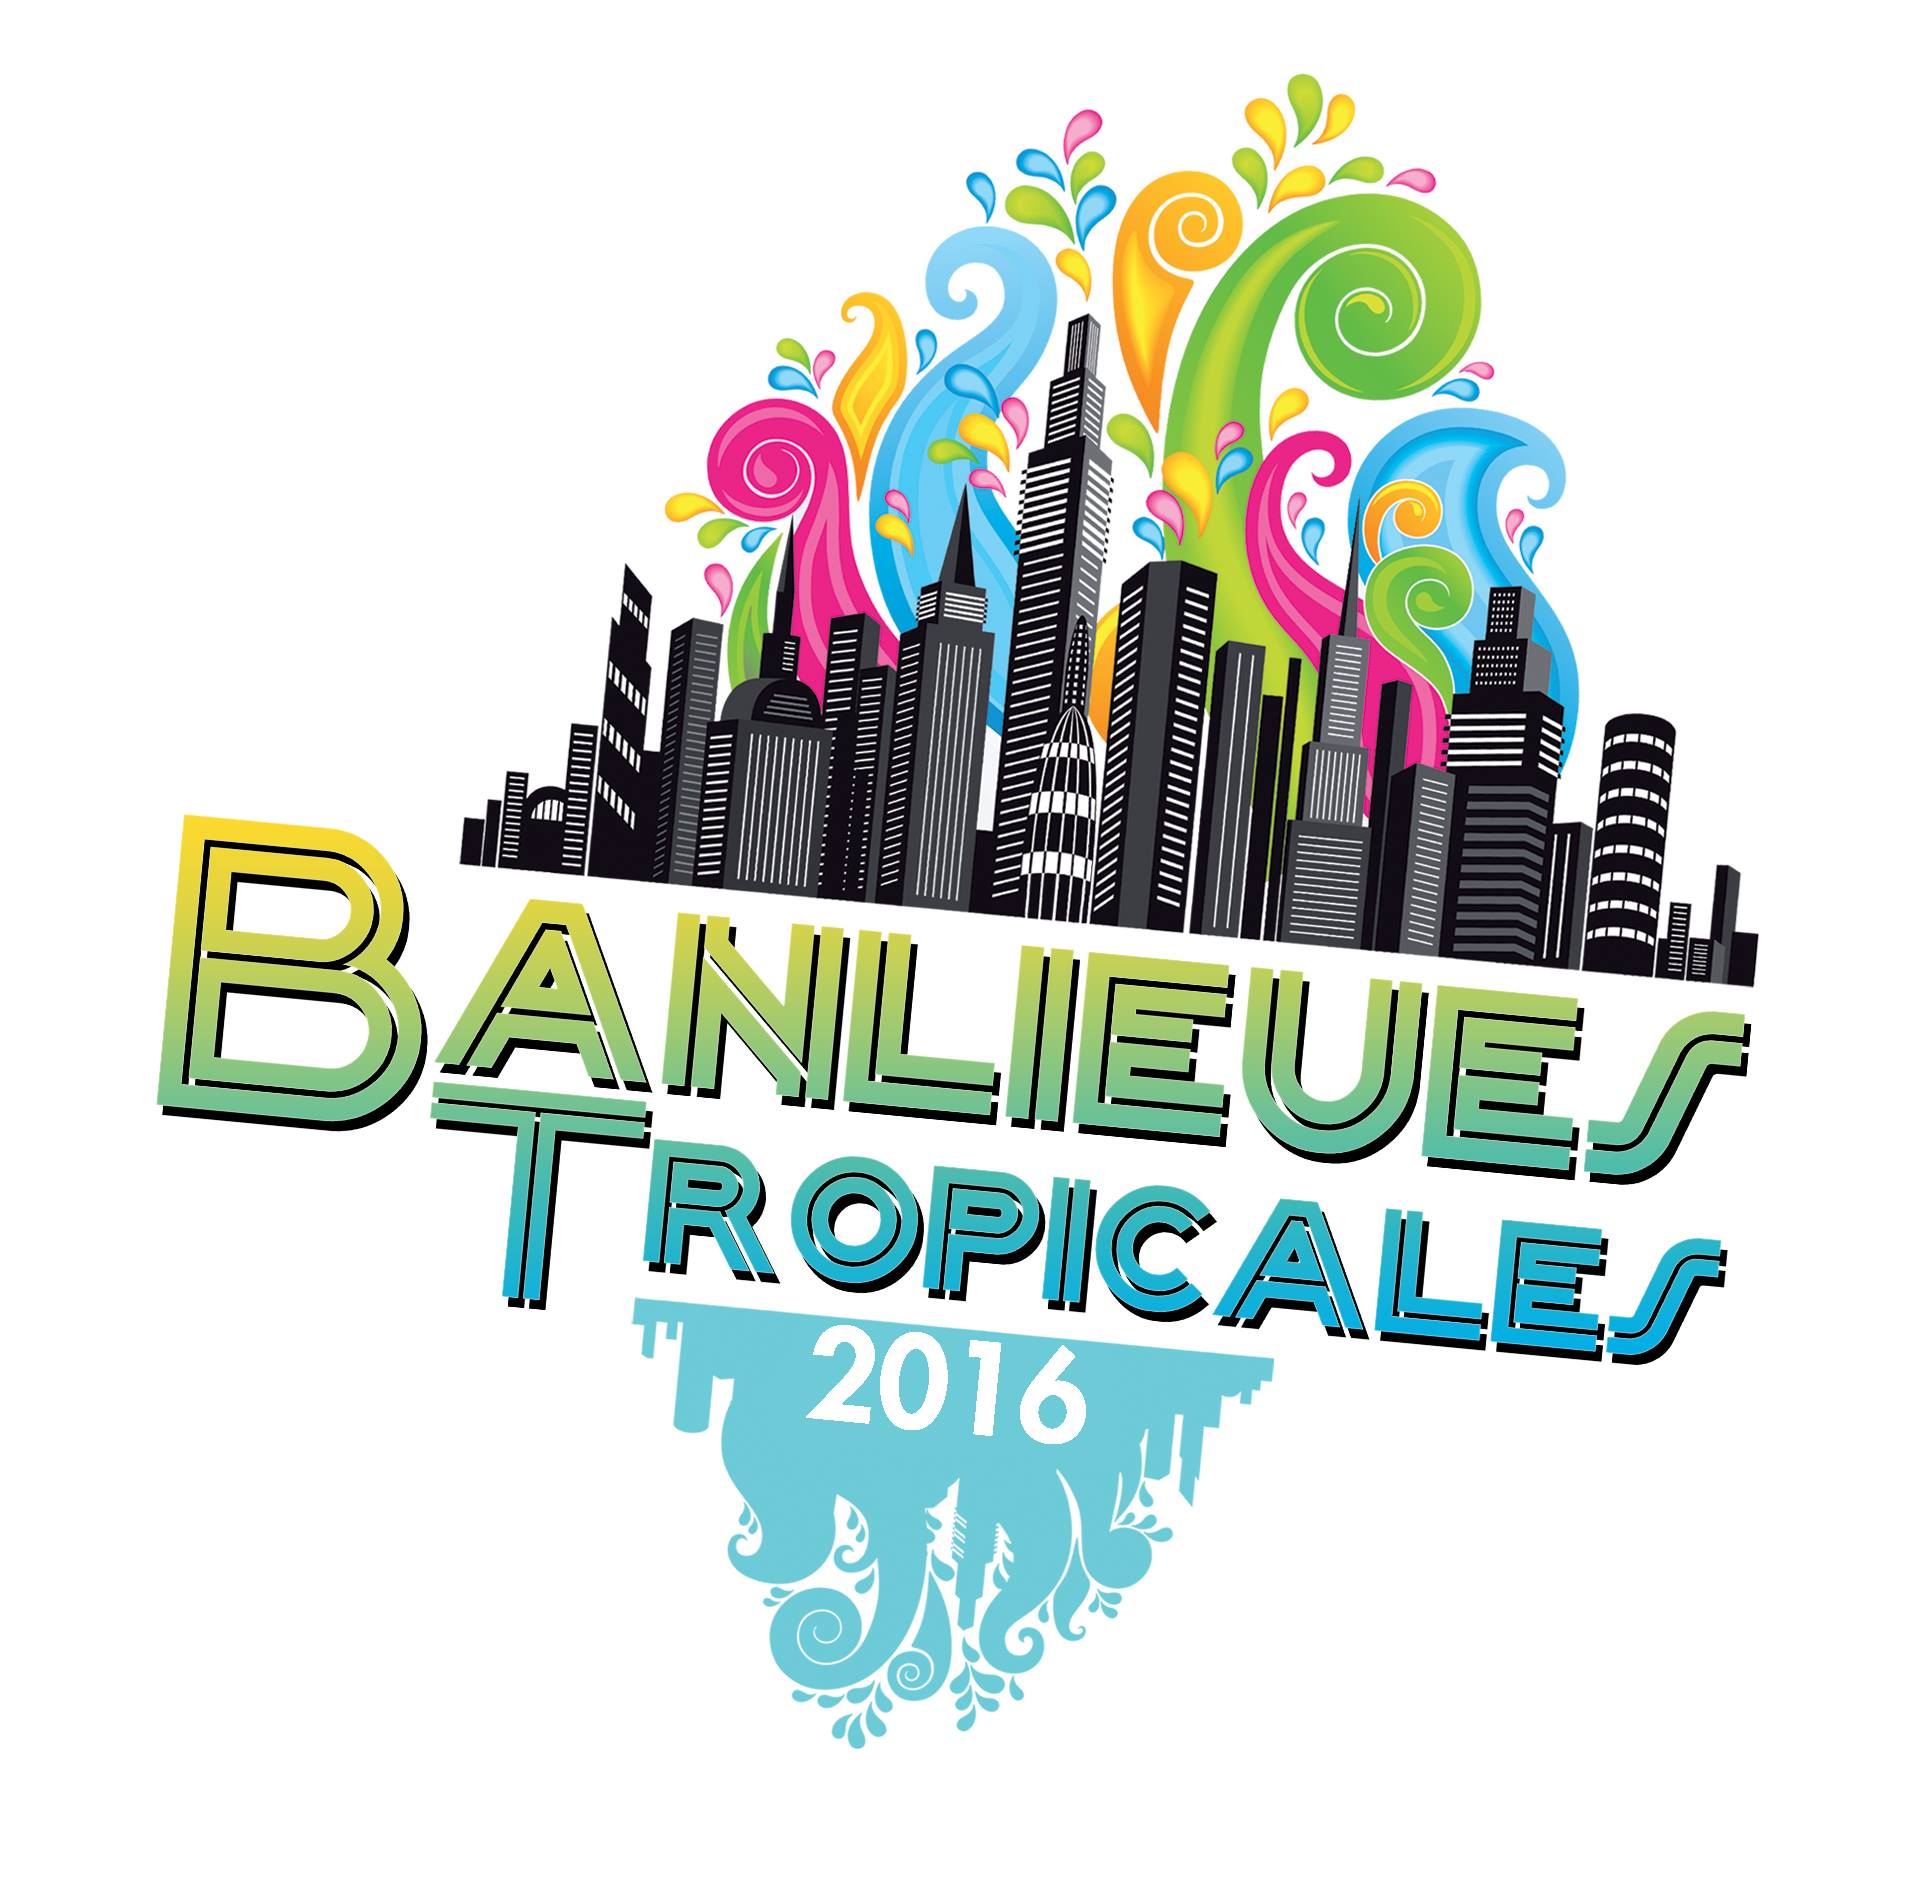 Banlieues Tropicales 2016 : Les musiques antillaises et tropicales vont résonner dans la capitale dès le 29 octobre